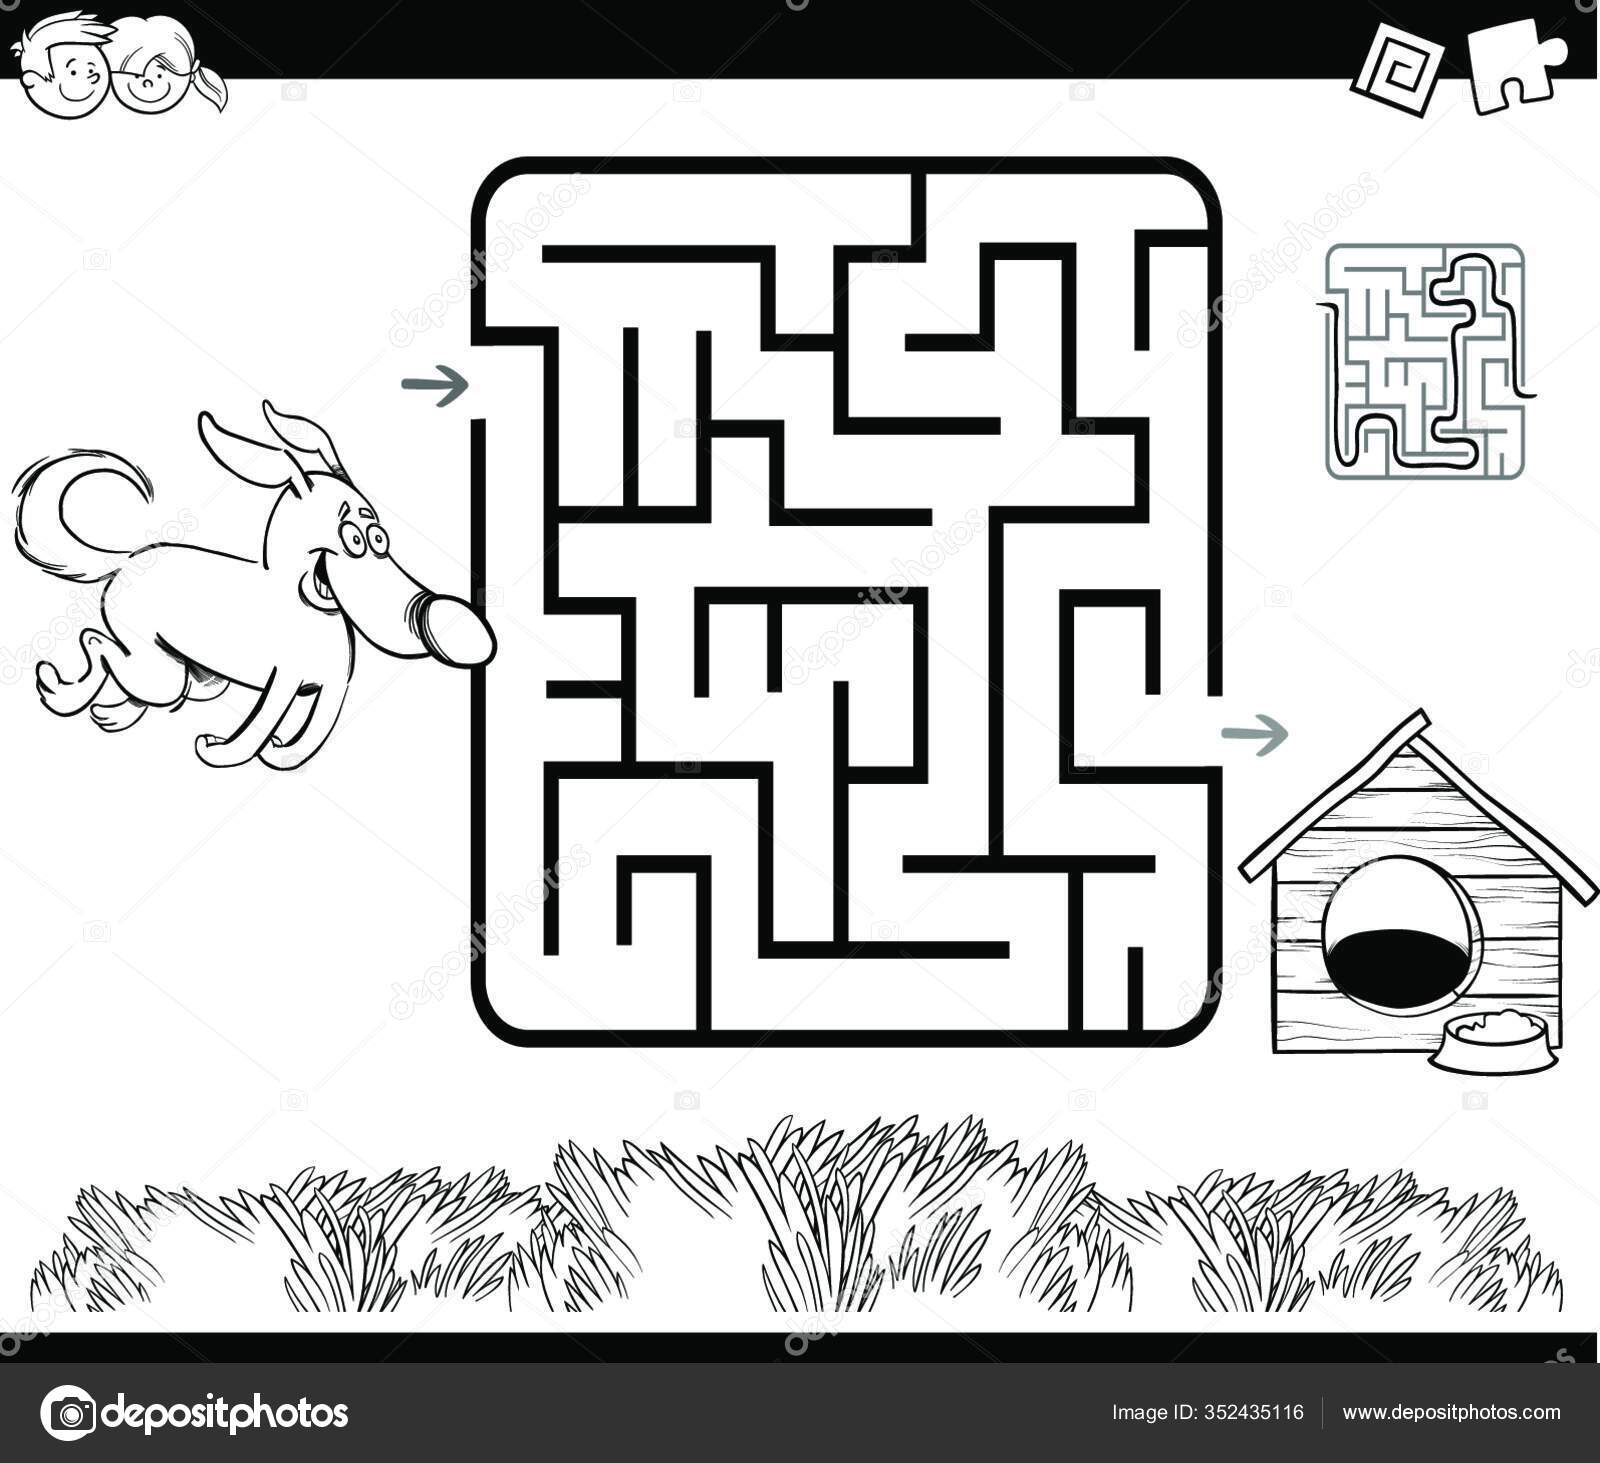 A educação do jogo do labirinto dos desenhos animados para